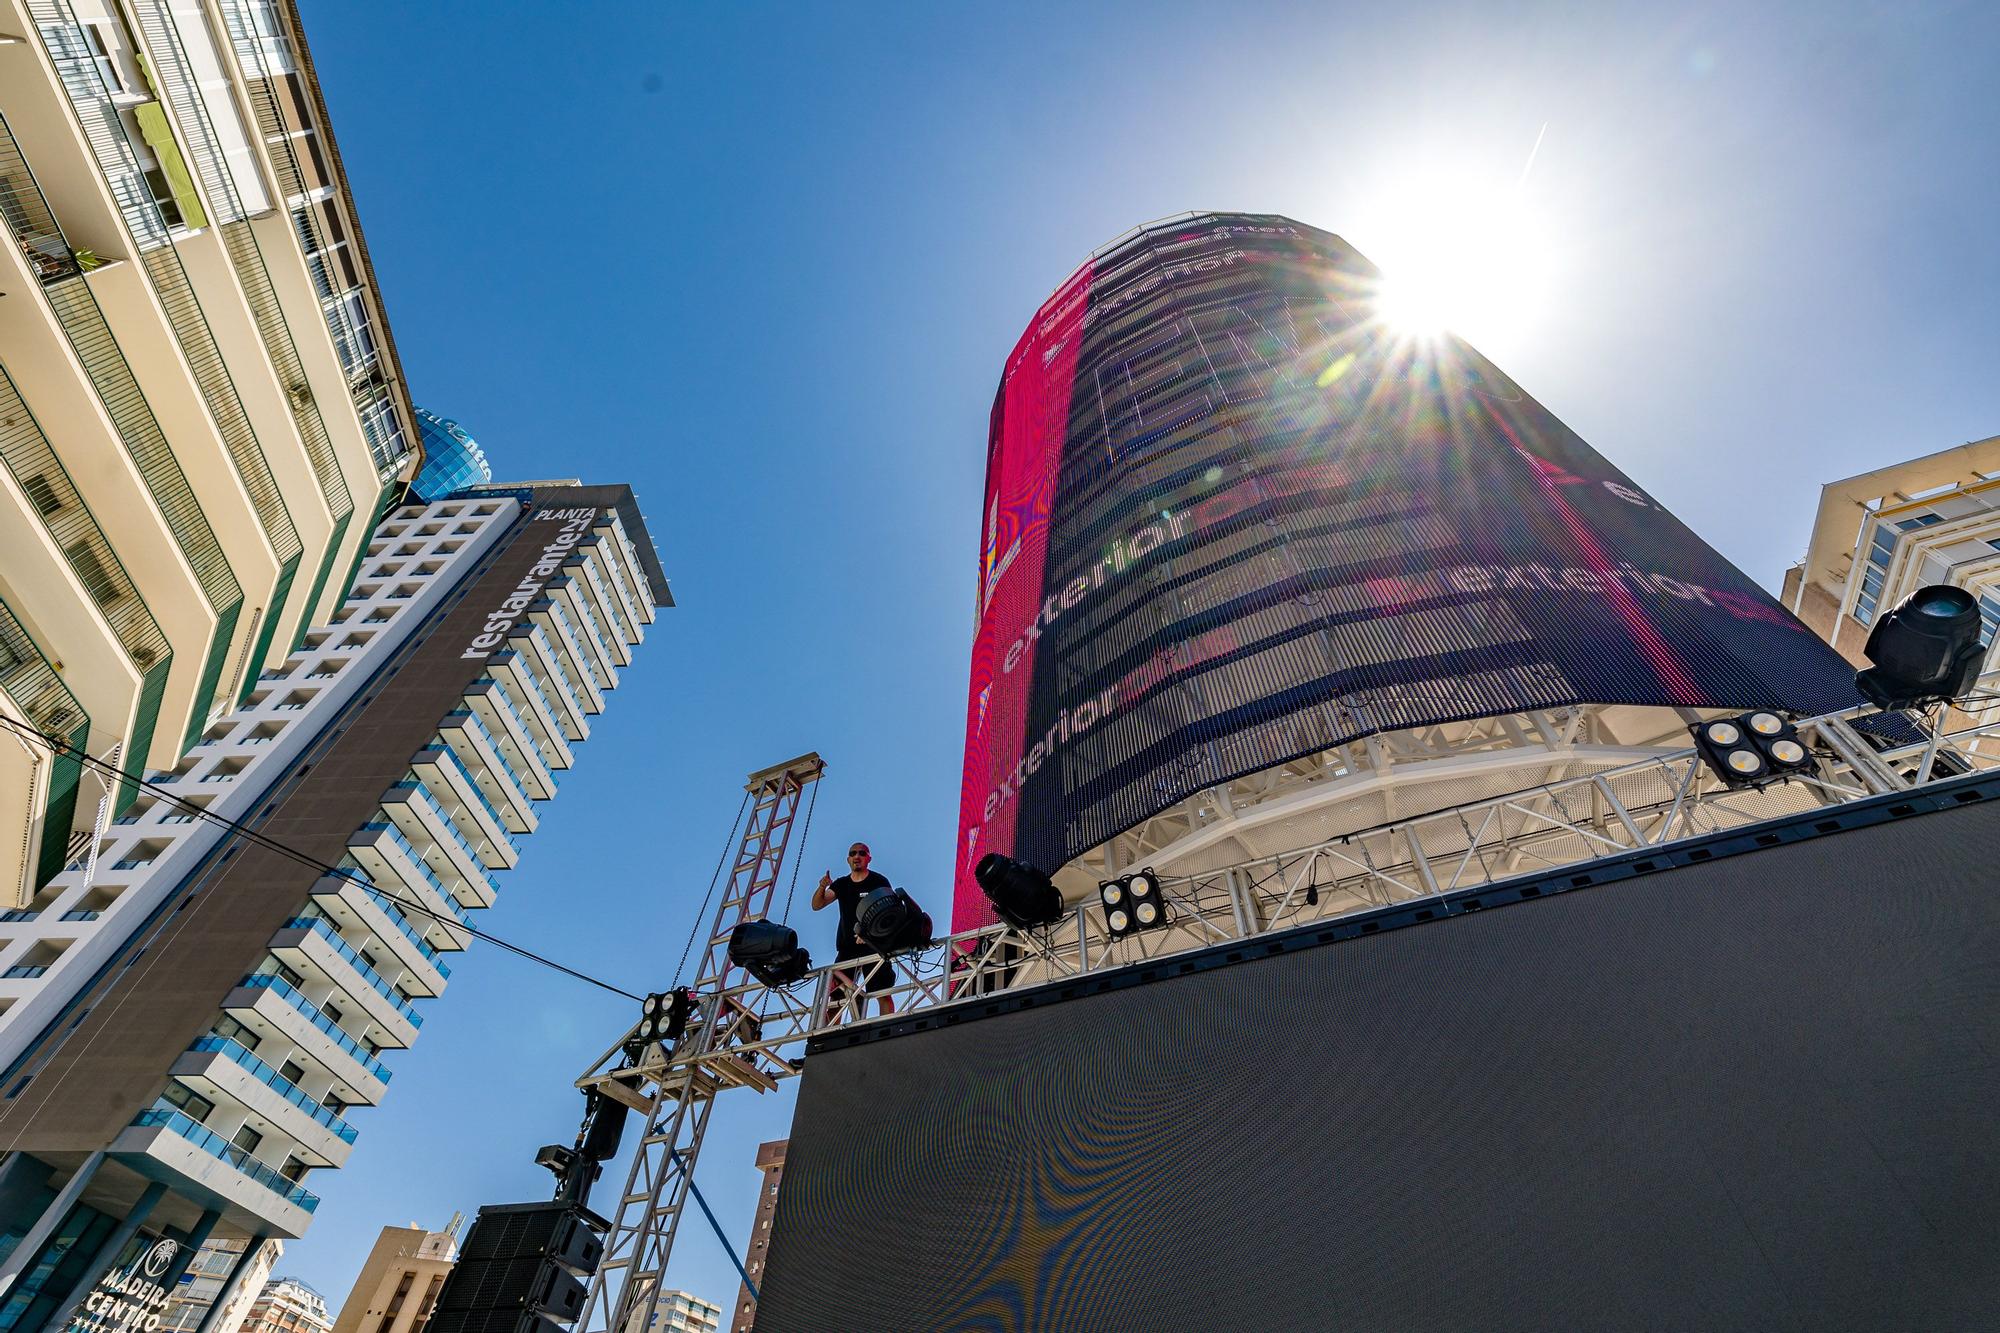 Benidorm inicia el montaje para la final de Eurovisión.  La plaza de La Hispanidad será el escenario de la "Pre Party" con tres pantallas gigantes y un escenario para las actuaciones previas a la gala en Turín | El "tecnohito", uno de los protagonistas del evento